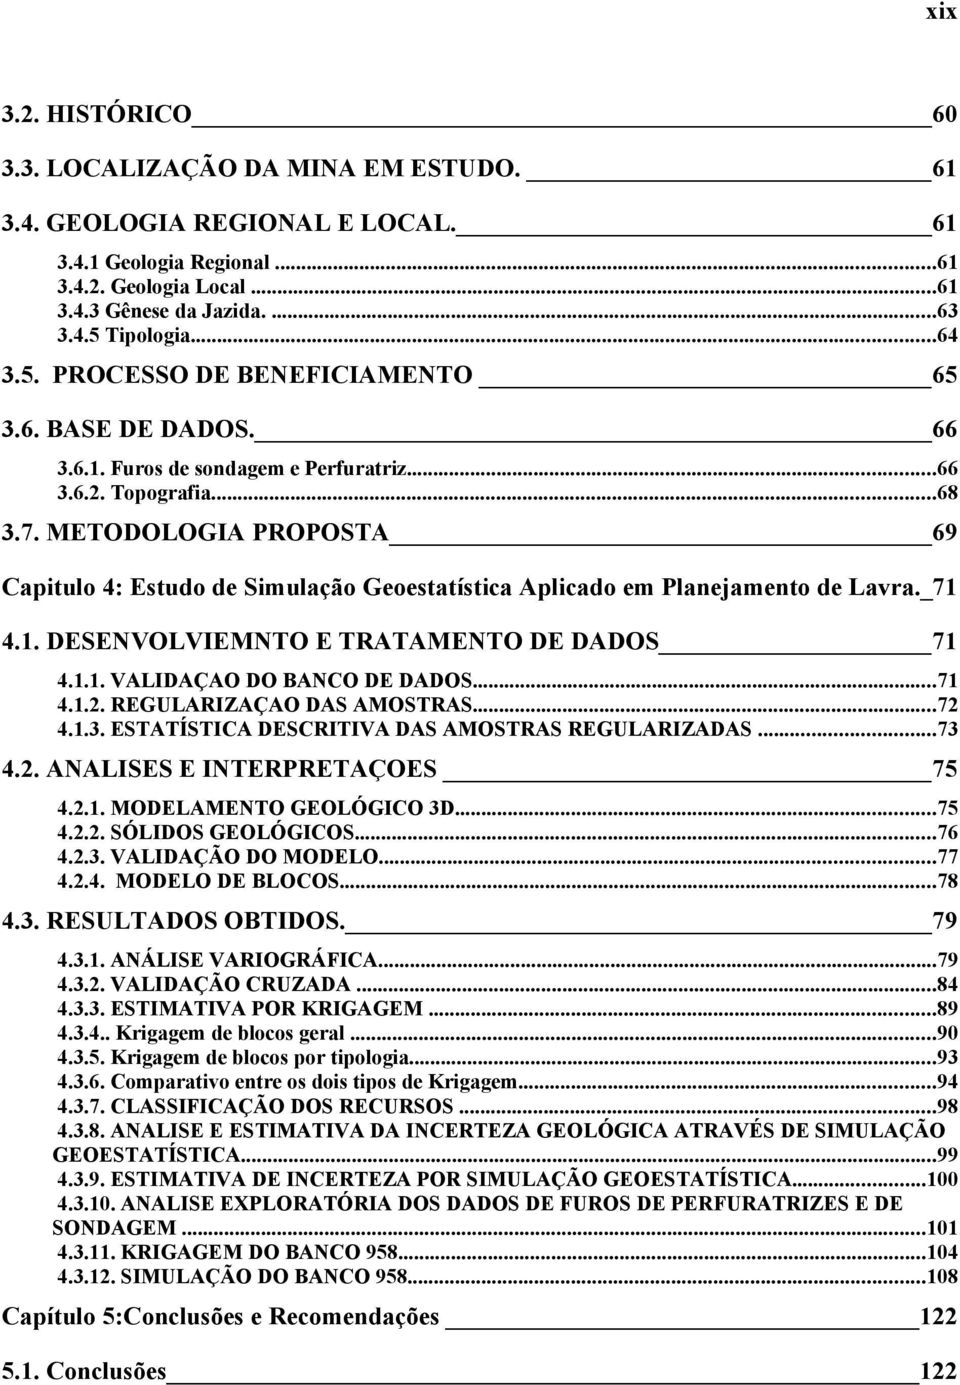 METODOLOGIA PROPOSTA 69 Capitulo 4: Estudo de Simulação Geoestatística Aplicado em Planejamento de Lavra._71 4.1. DESENVOLVIEMNTO E TRATAMENTO DE DADOS 71 4.1.1. VALIDAÇAO DO BANCO DE DADOS...71 4.1.2.